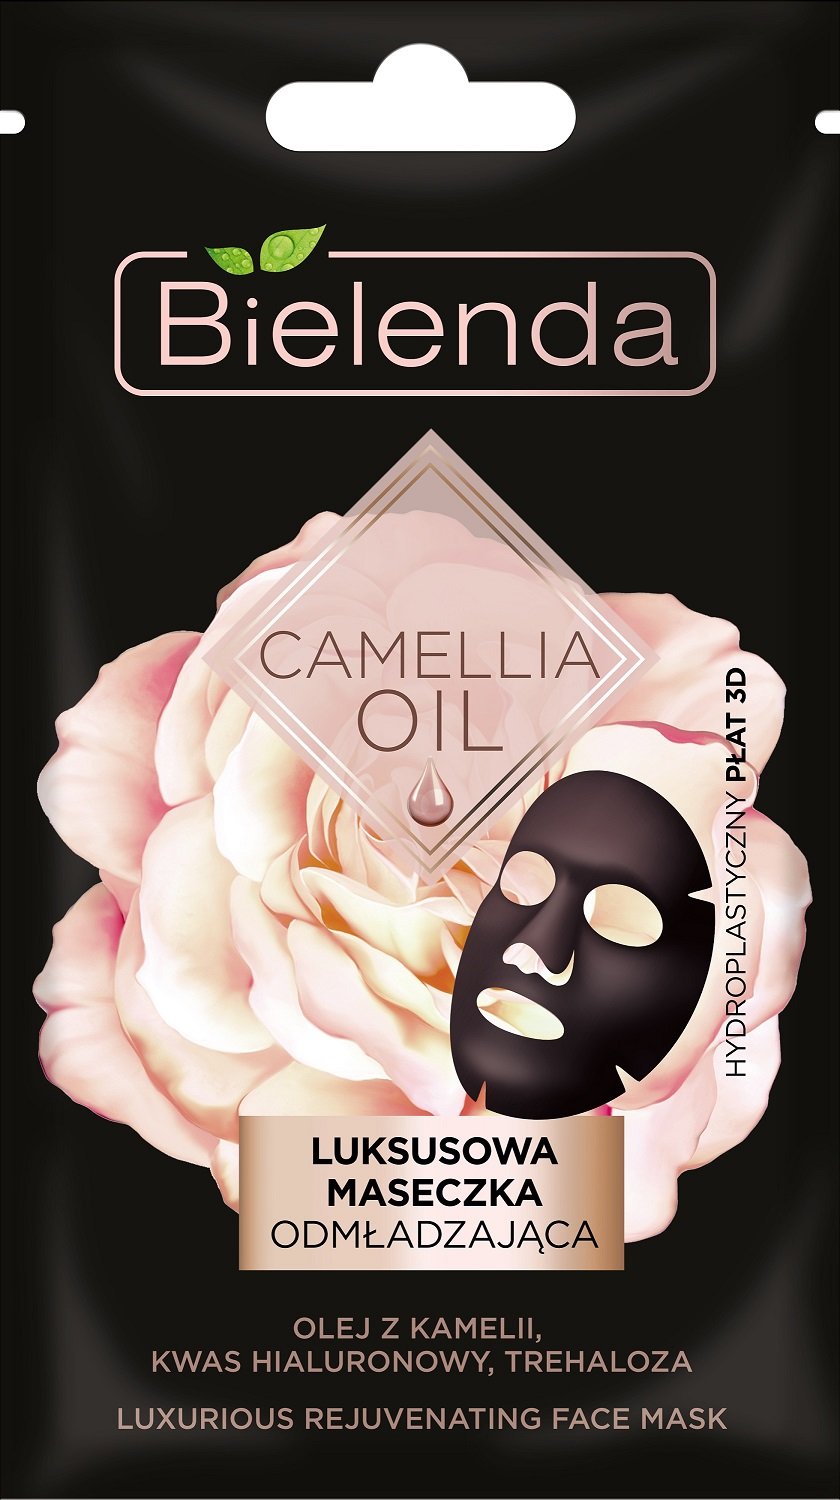 Bielenda Camellia Oil Luksusowa Maseczka odmładzająca-hydroplastyczny płat 3D  1szt